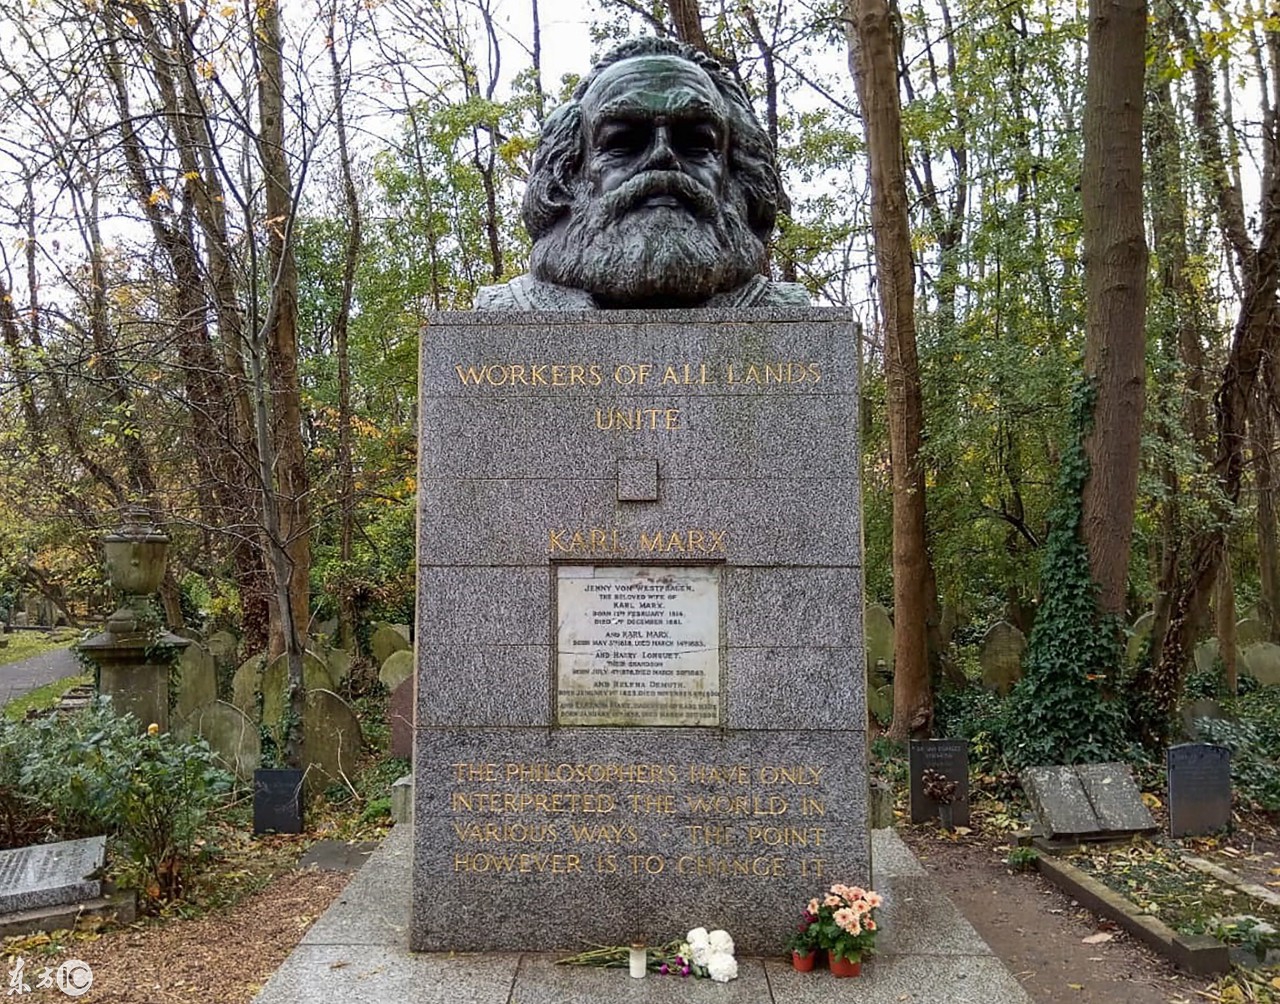 哲学家卡尔马克思在伦敦海格特公墓被破坏